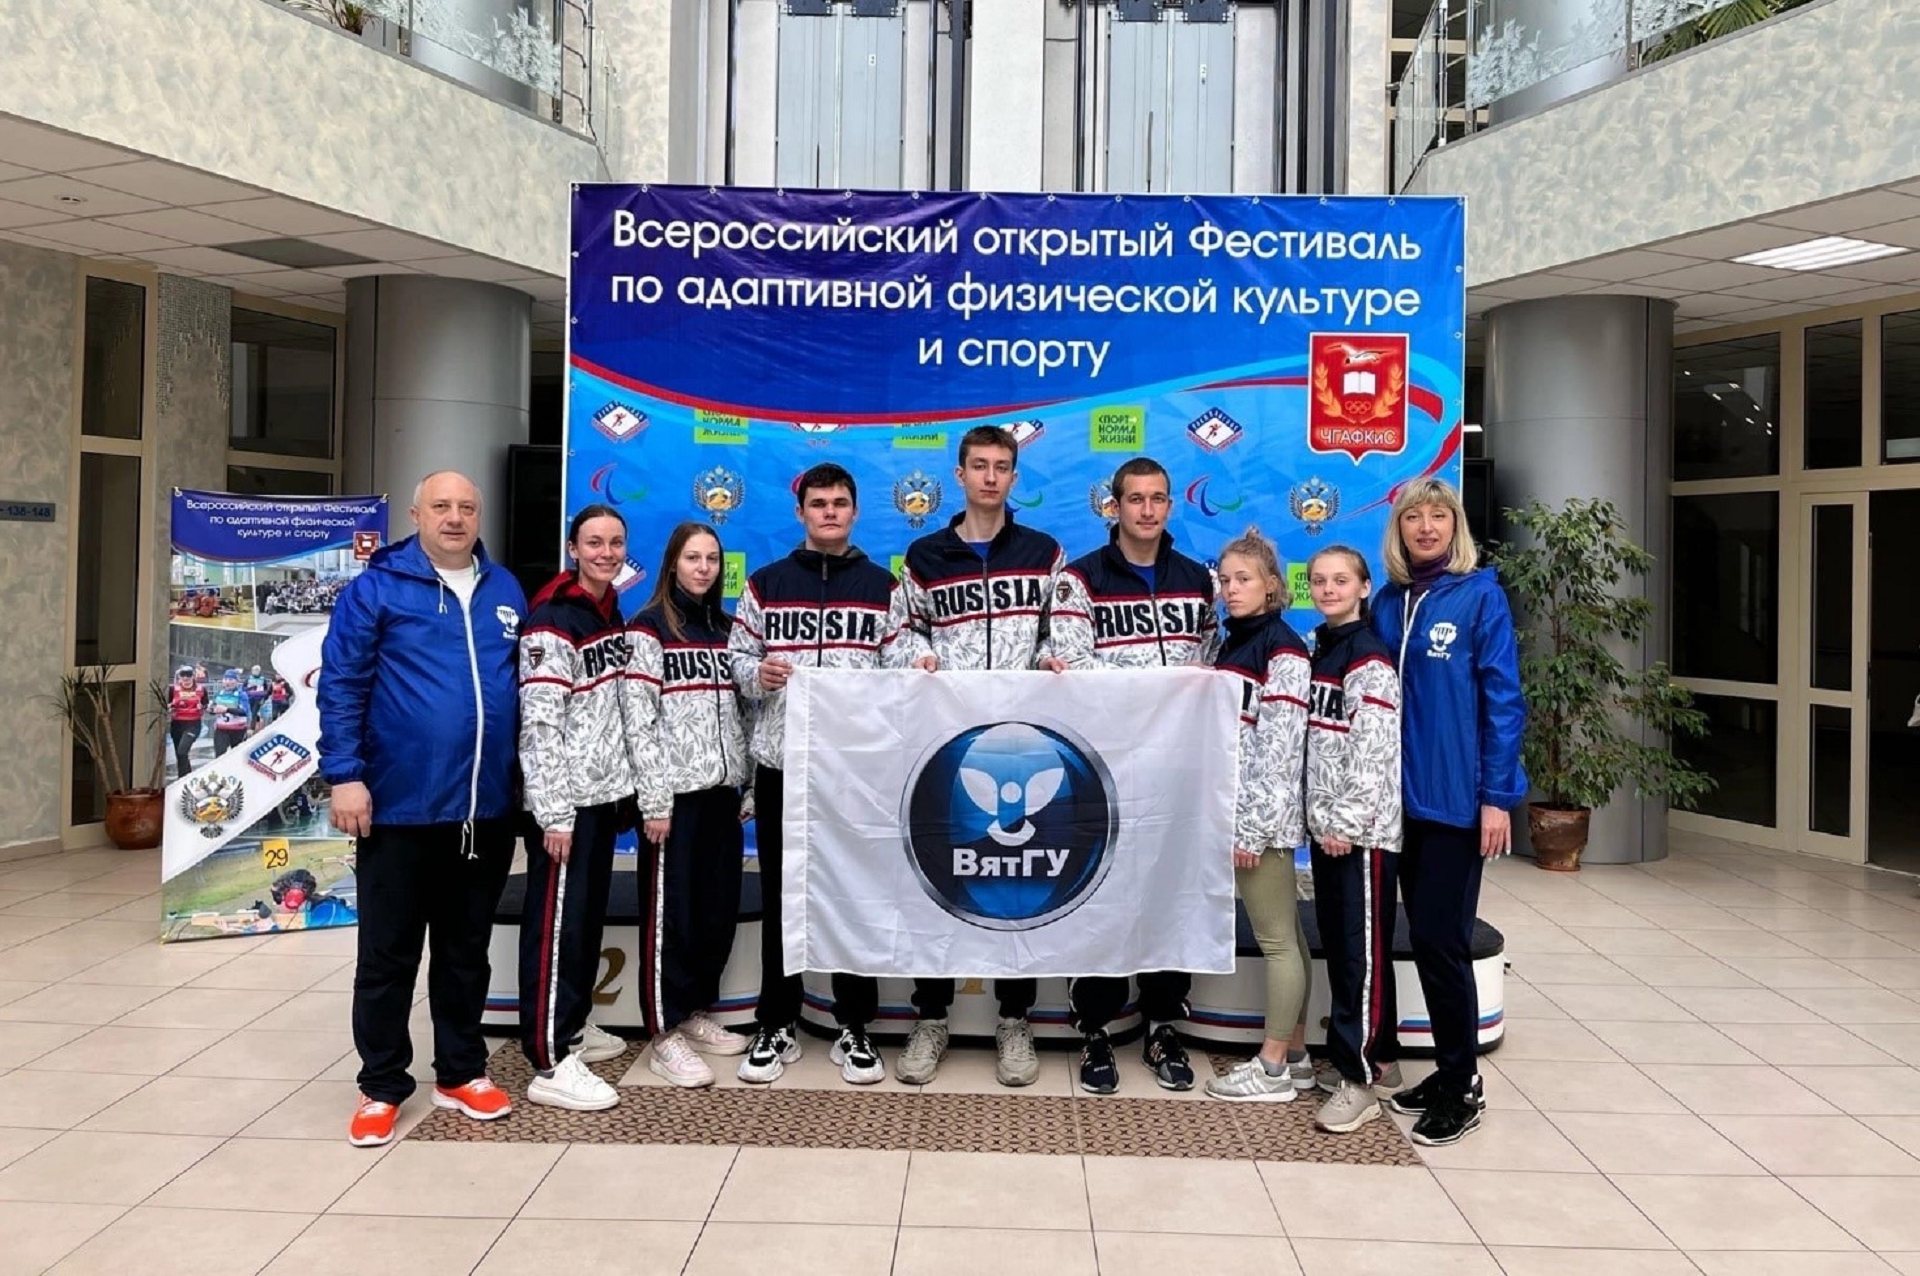 Студенты ВятГУ стали призерами Всероссийского открытого фестиваля адаптивной физической культуры